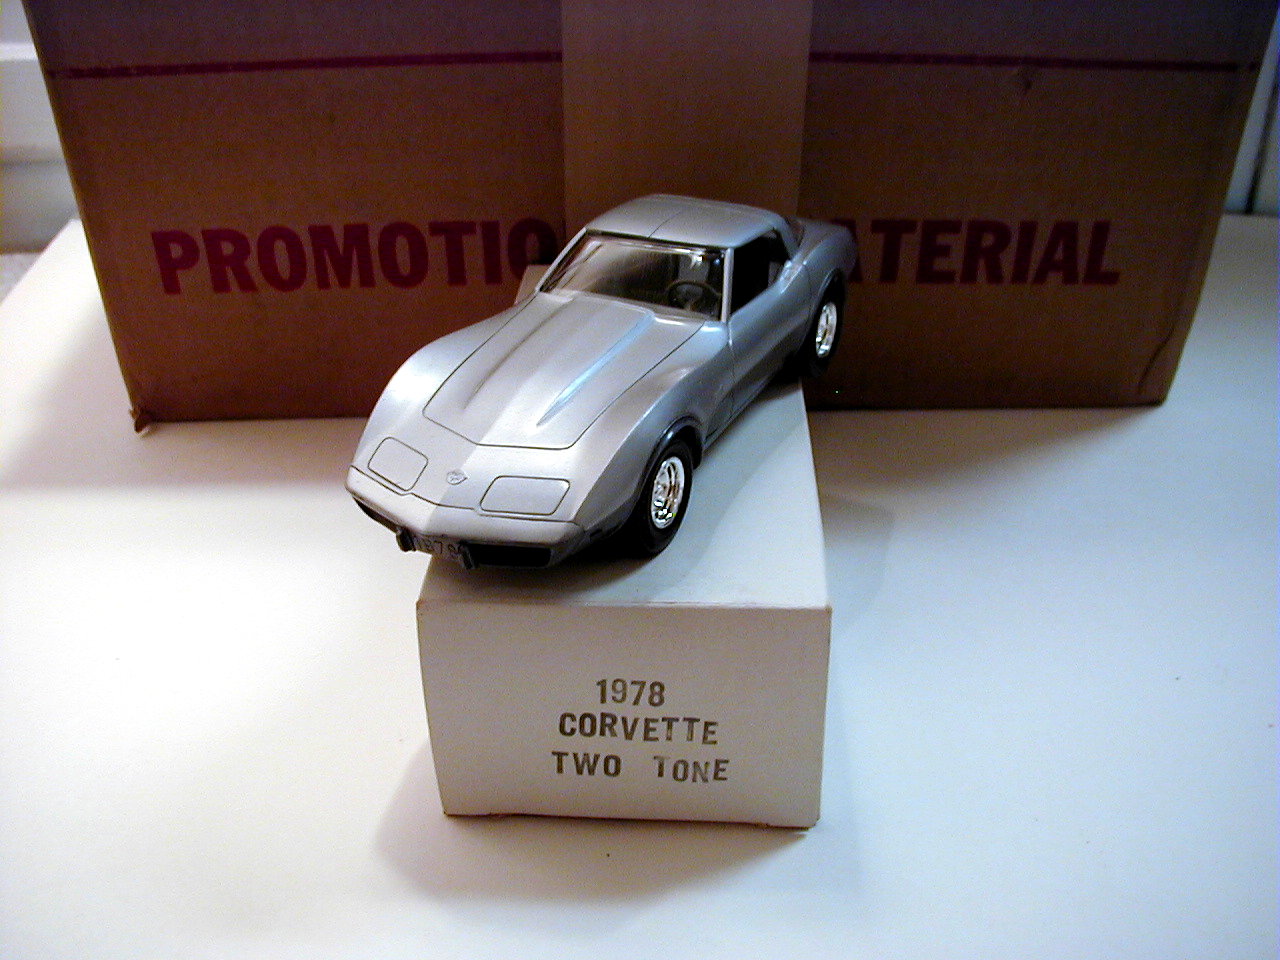 Corvette 1978 Promo Model From GM